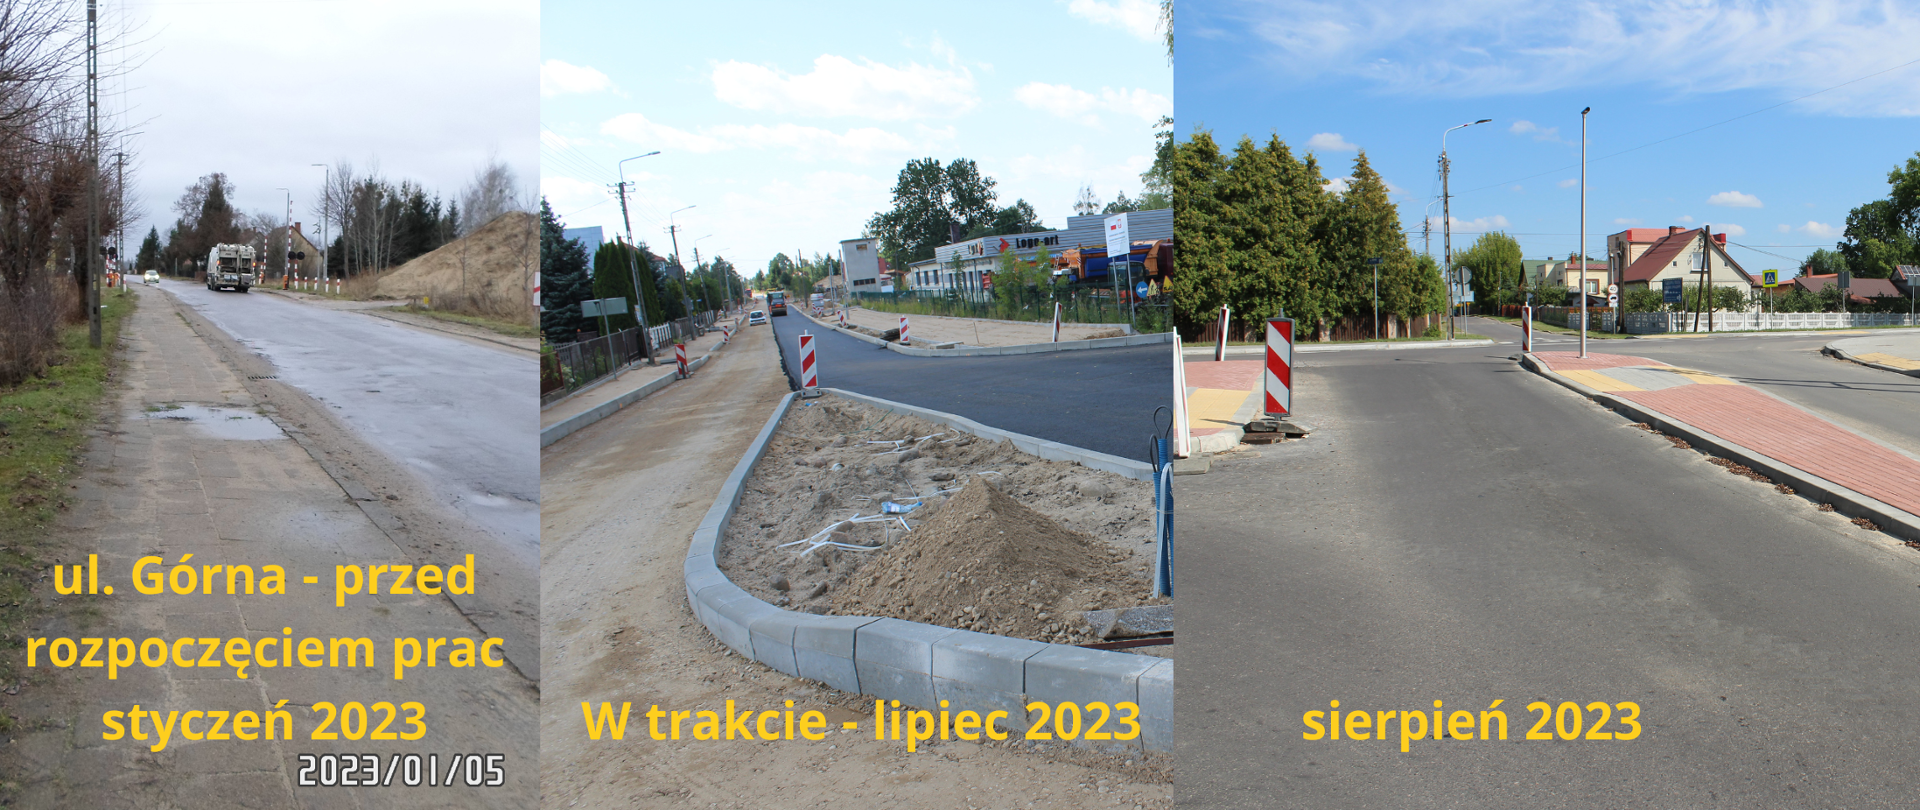 Kolaż zdjęć - od lewej zdjęcie przed rozpoczęciem prac ze stycznia 2023 r. - widok spękanej nawierzchni na drodze i dziurawych krawężników, kolejne zdjęcie - w trakcie prac - widok prac nad nawierzchnią drogi, po prawej - zdjęcie z sierpnia 2023 przedstawiające nową nawierzchnię drogi 